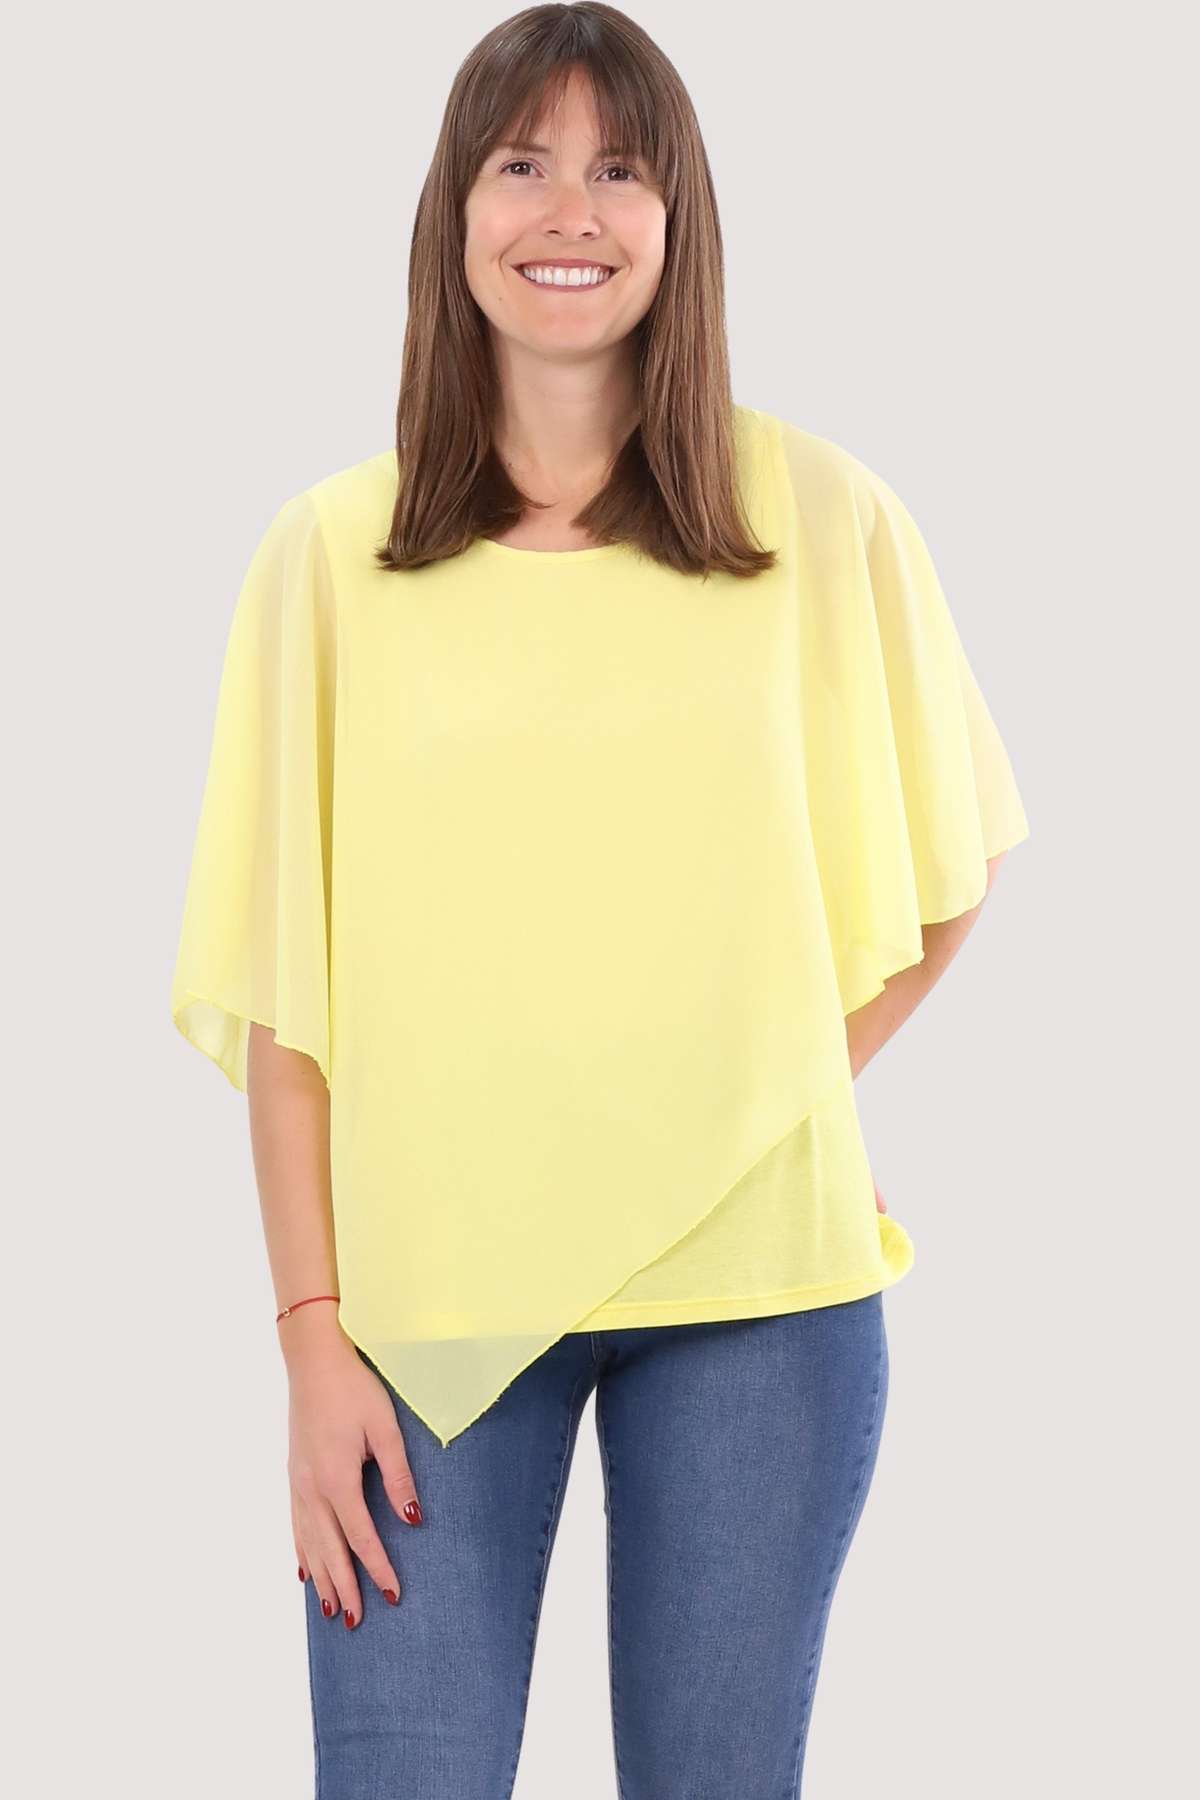 Шифоновая блузка 10732 блузка-слип блузка-рубашка асимметричного кроя, один размер